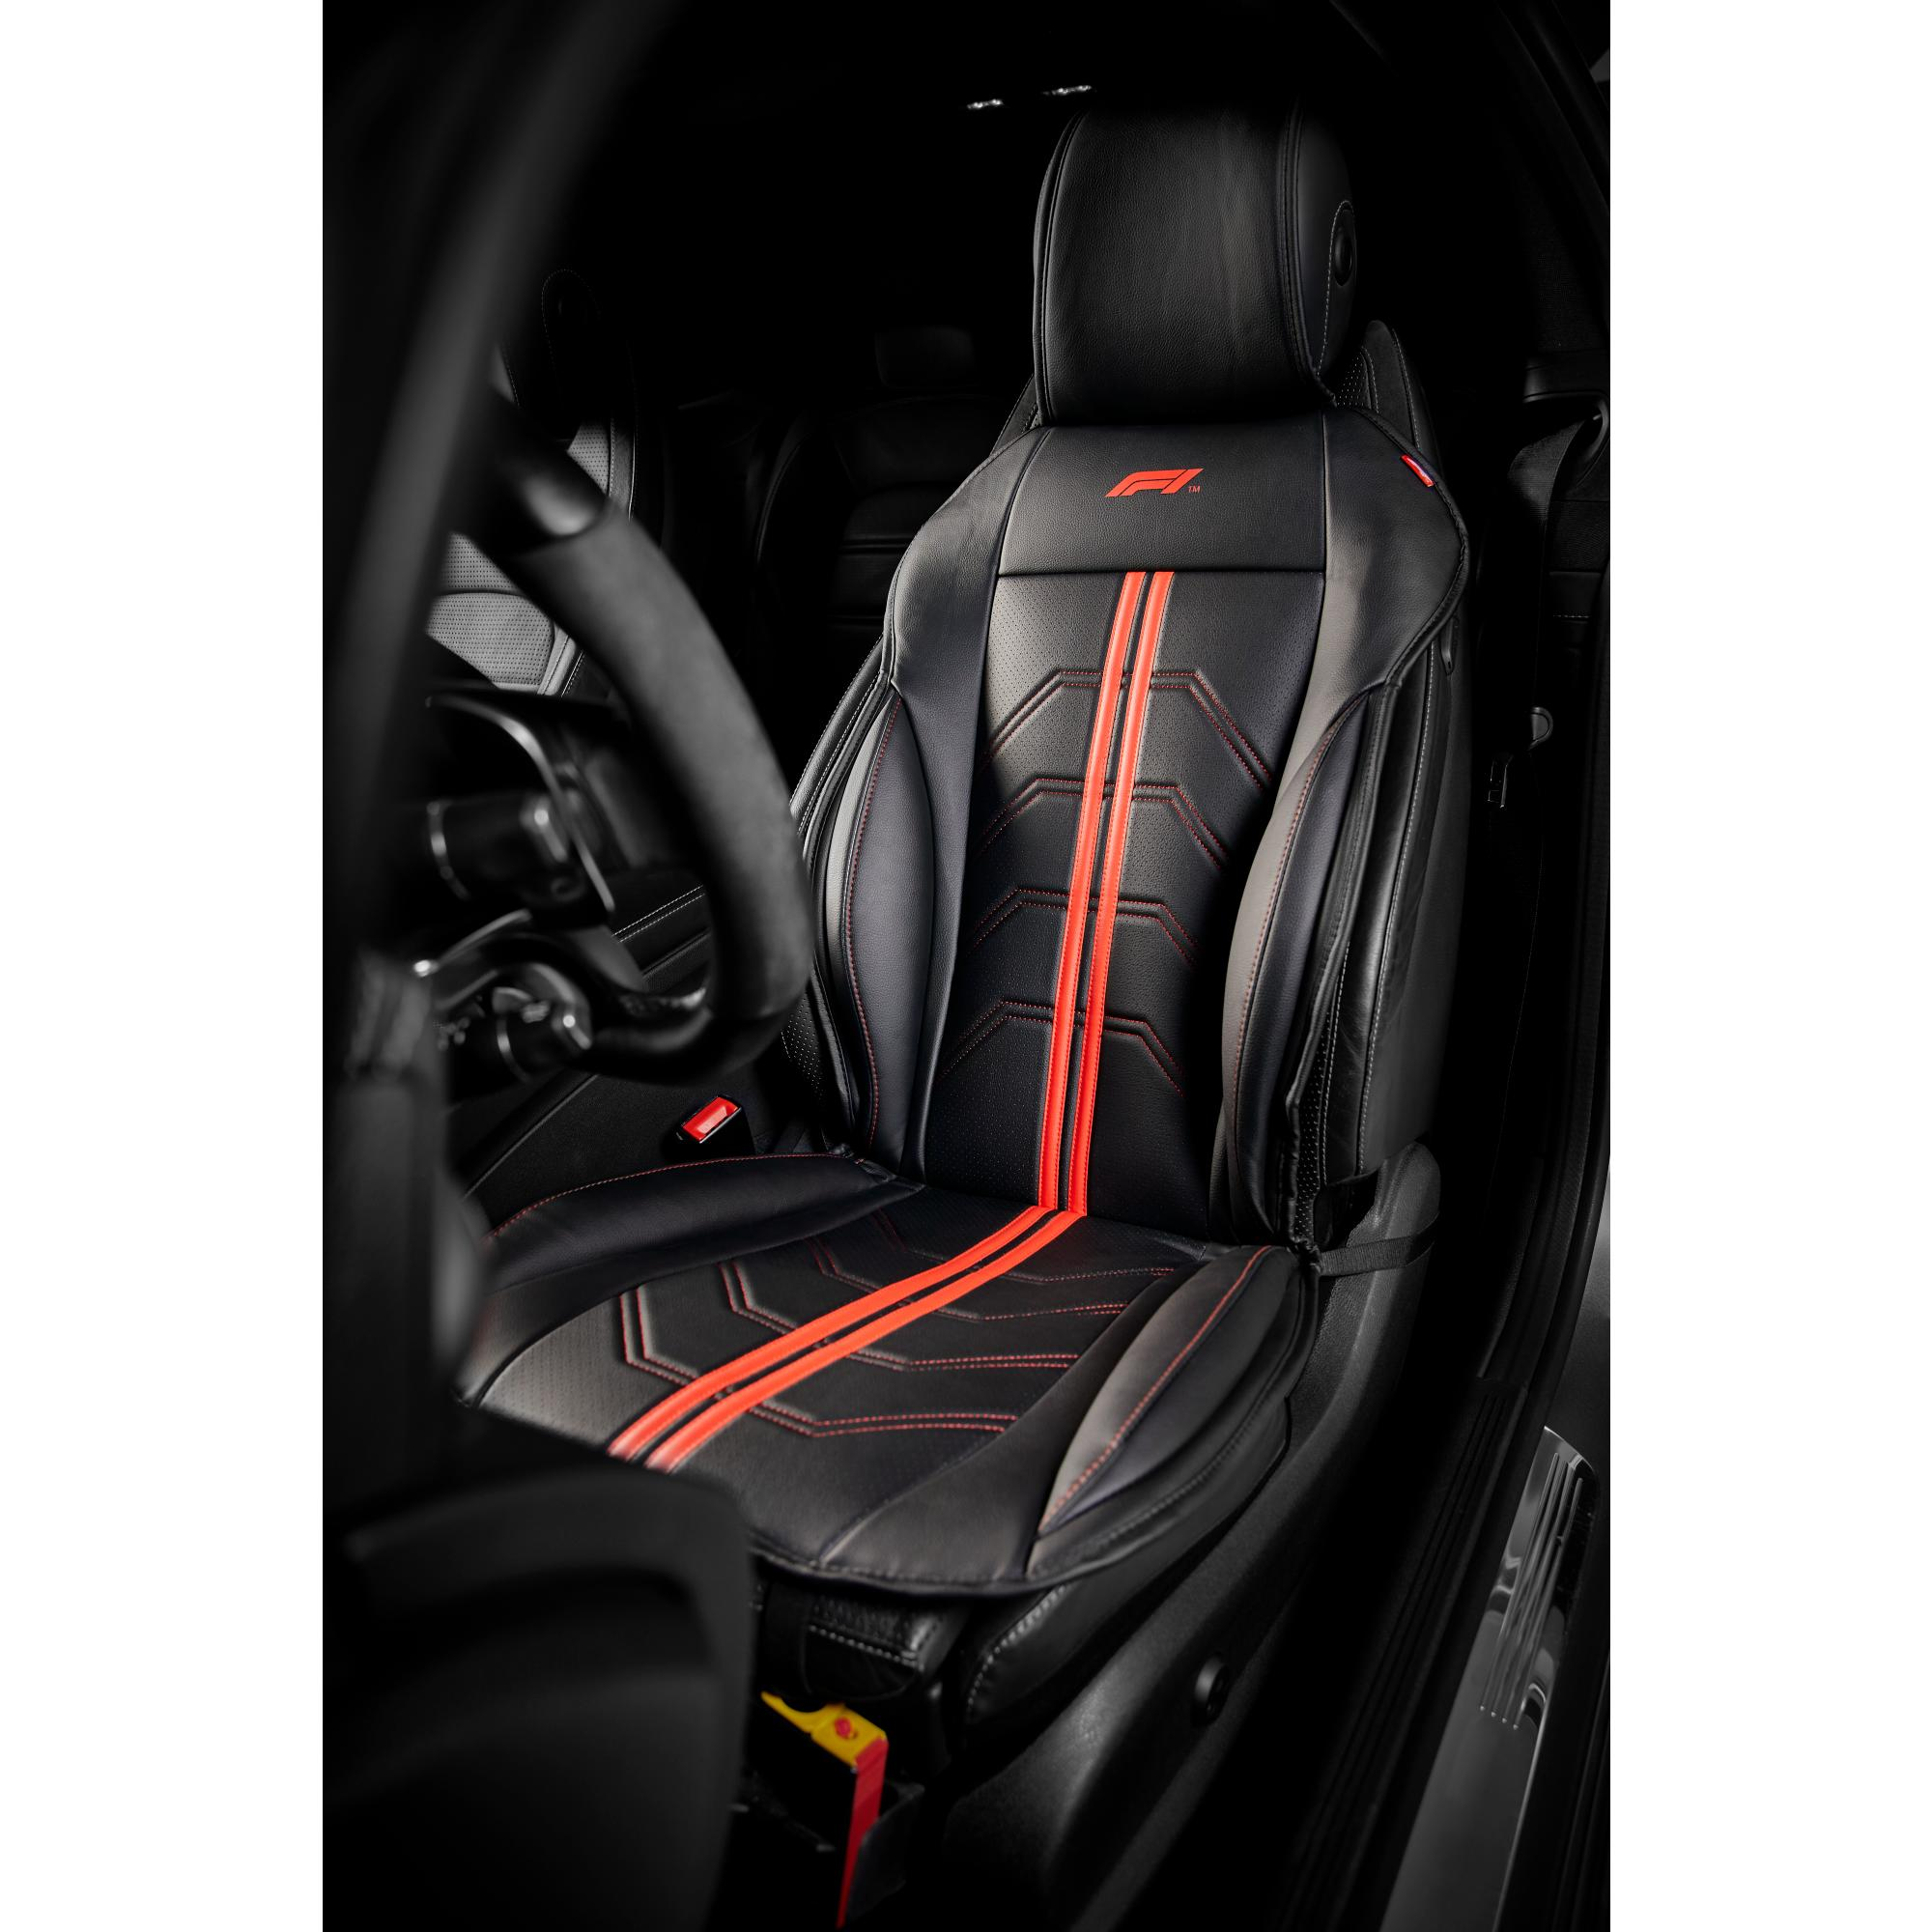 Autositzauflage Scorpion rot schwarz- bequeme Sitzauflage